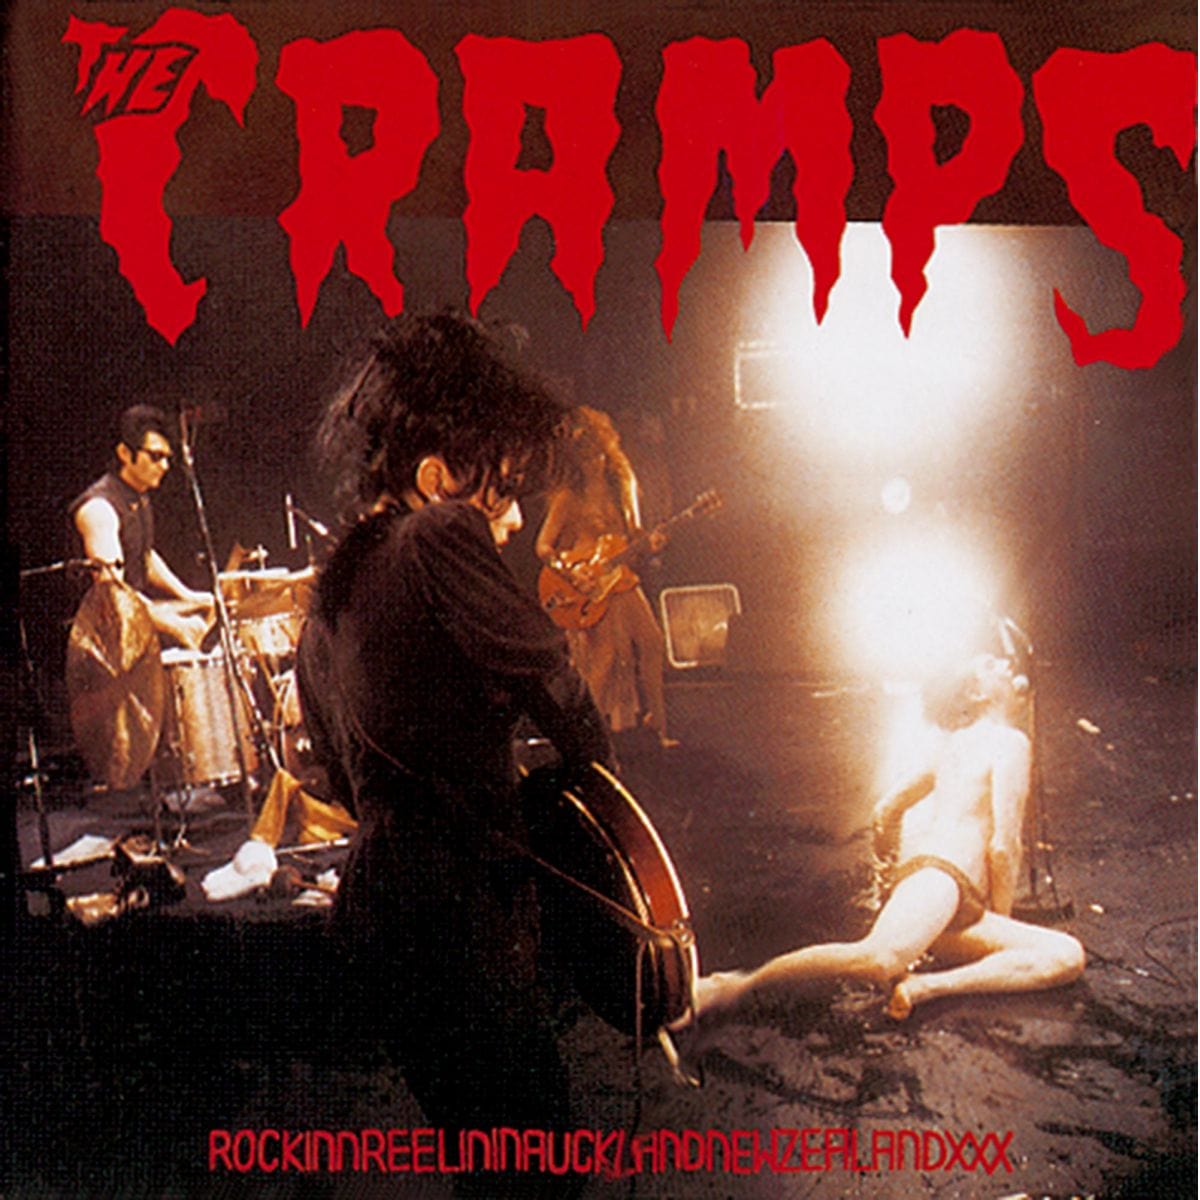 THE CRAMPS: Rockinnreelininaucklandandnewzealandxxx (180g) (Colored vinyl) LP